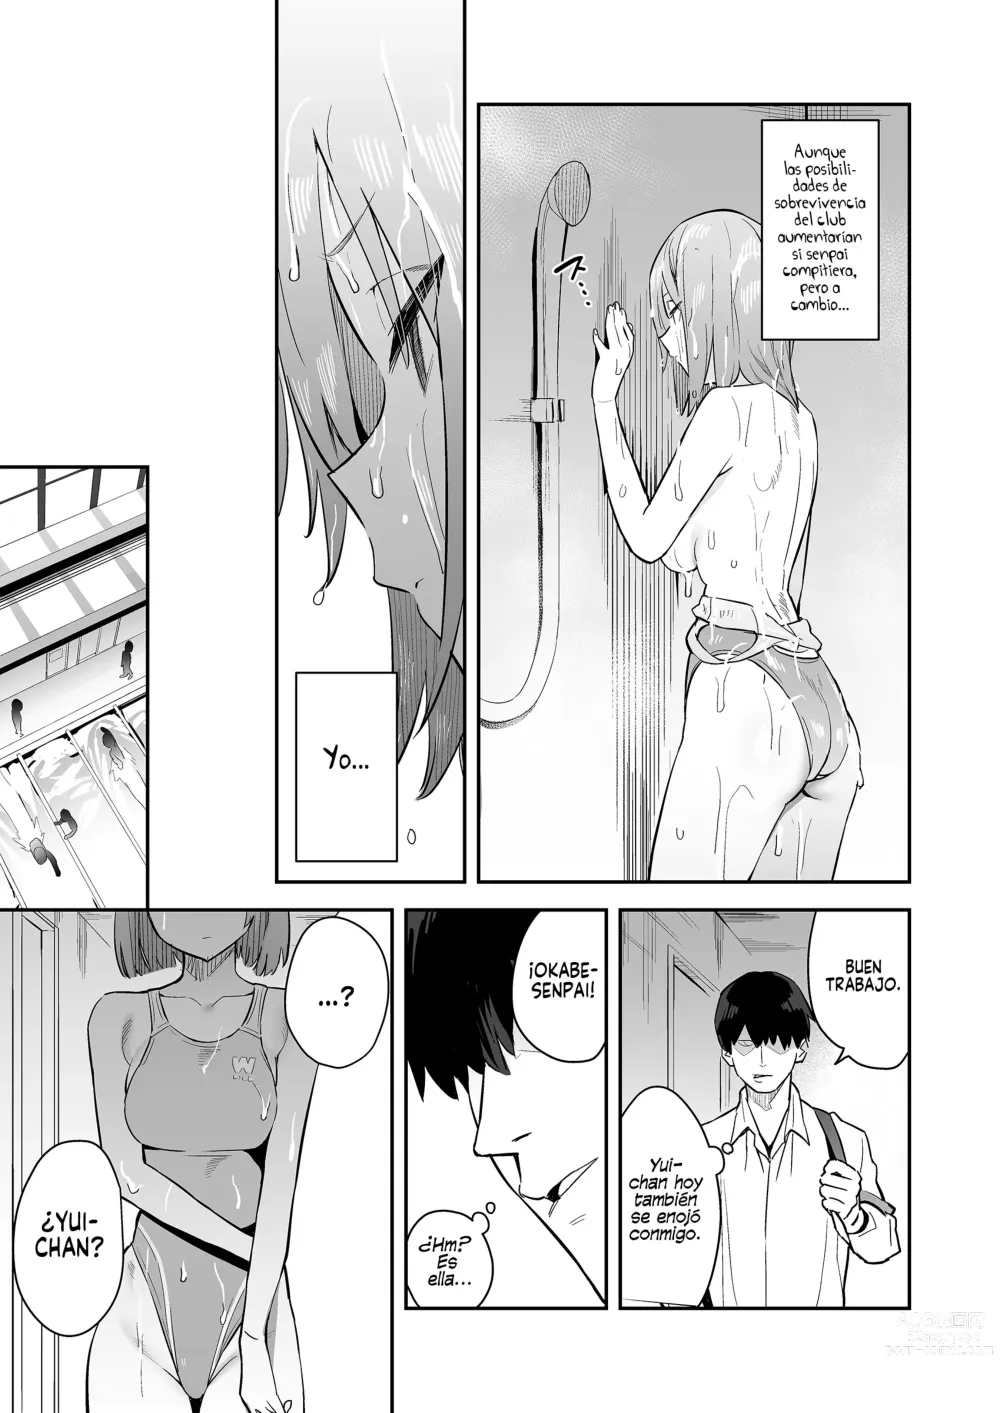 Page 7 of doujinshi La Chica Seria en Traje de Baño de Competición que Termino Ahogándose en el Sexo